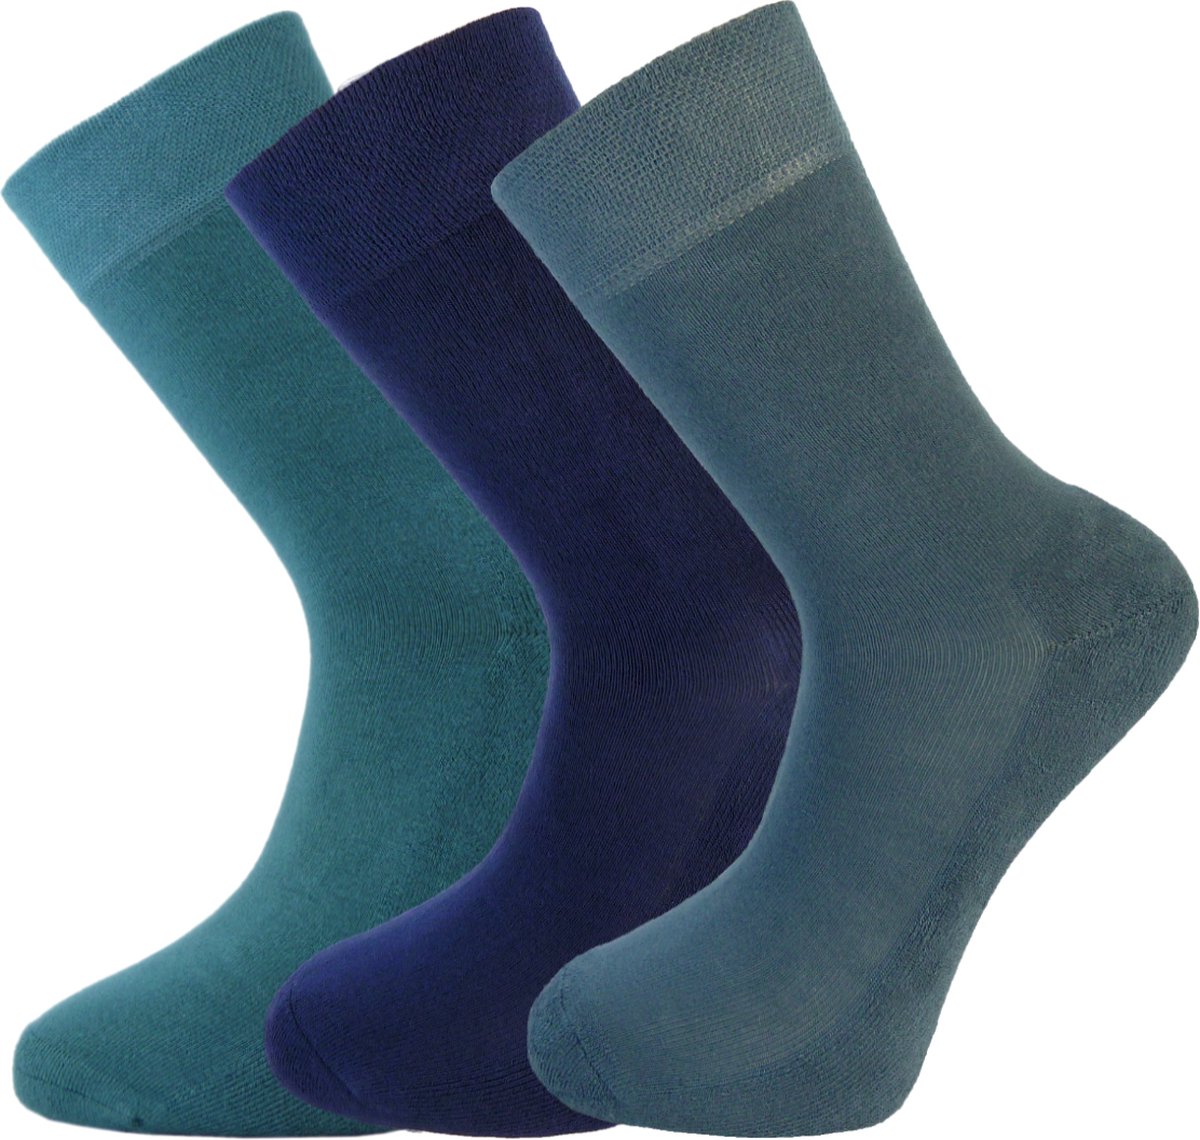 Bamboe sokken 3 paar - Blauw - RAF blauw - groenblauw - Maat 40-46